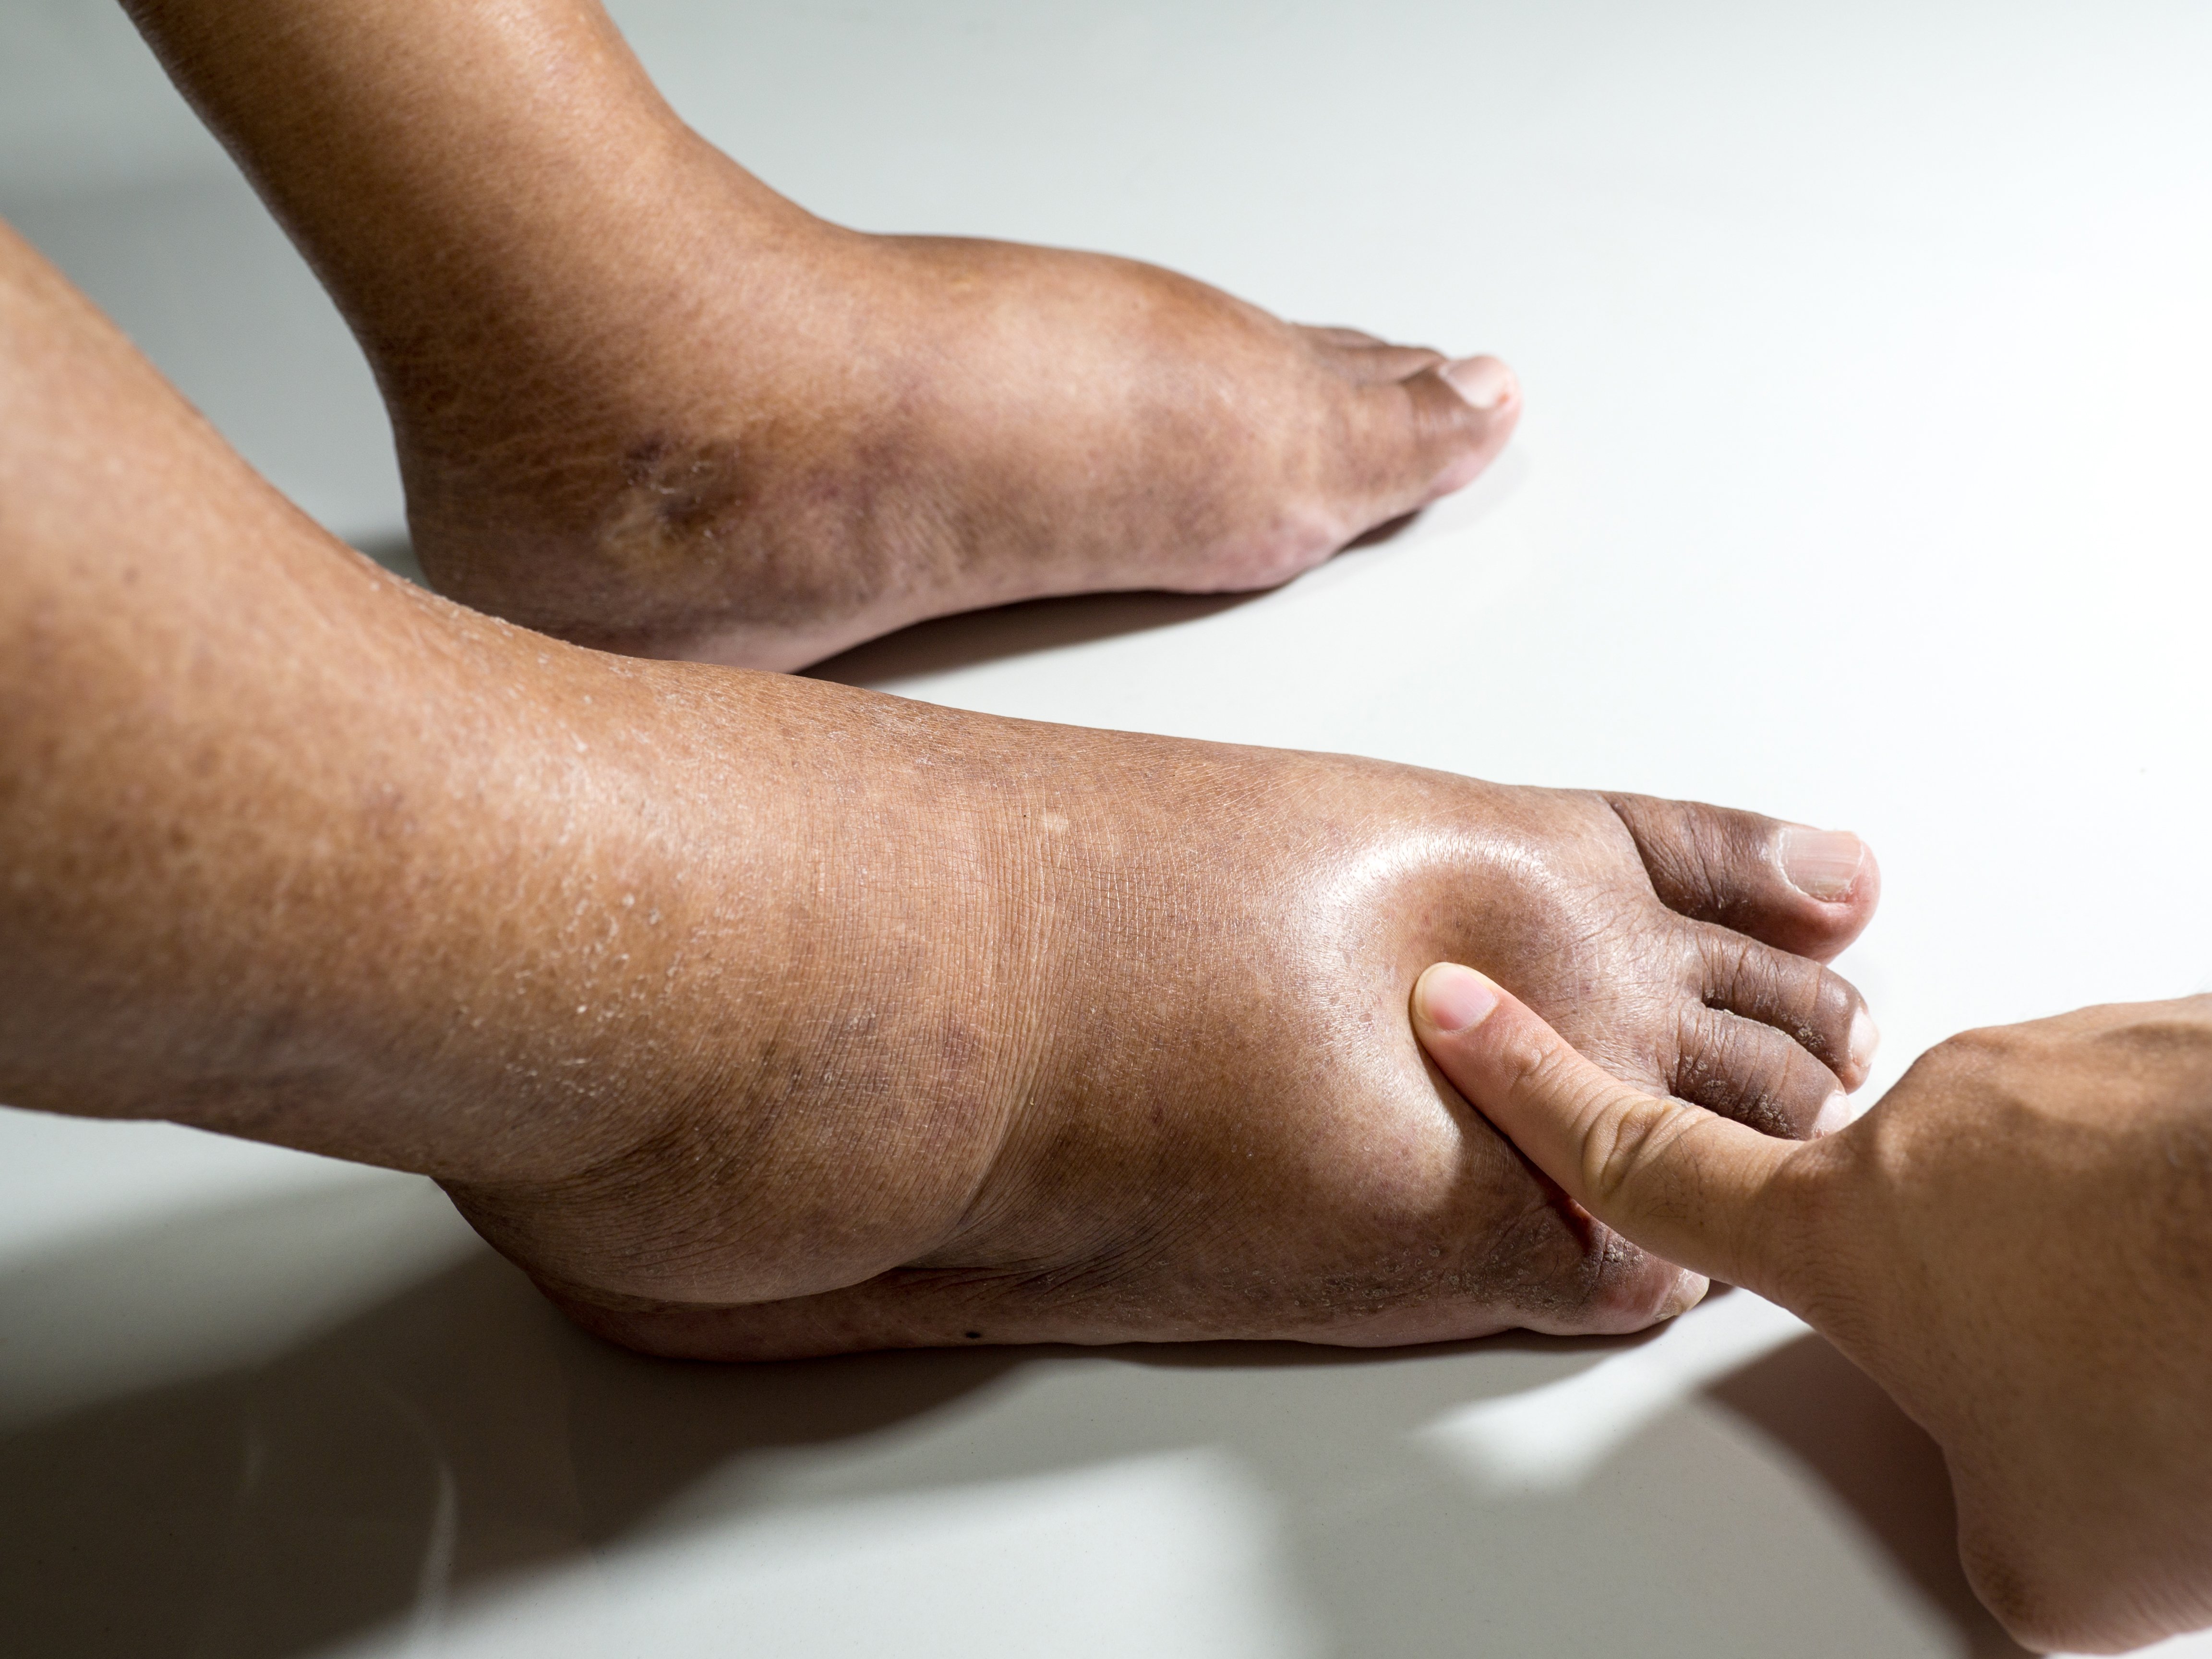 Muejr con piernas y pies hinchados | Foto: Shutterstock